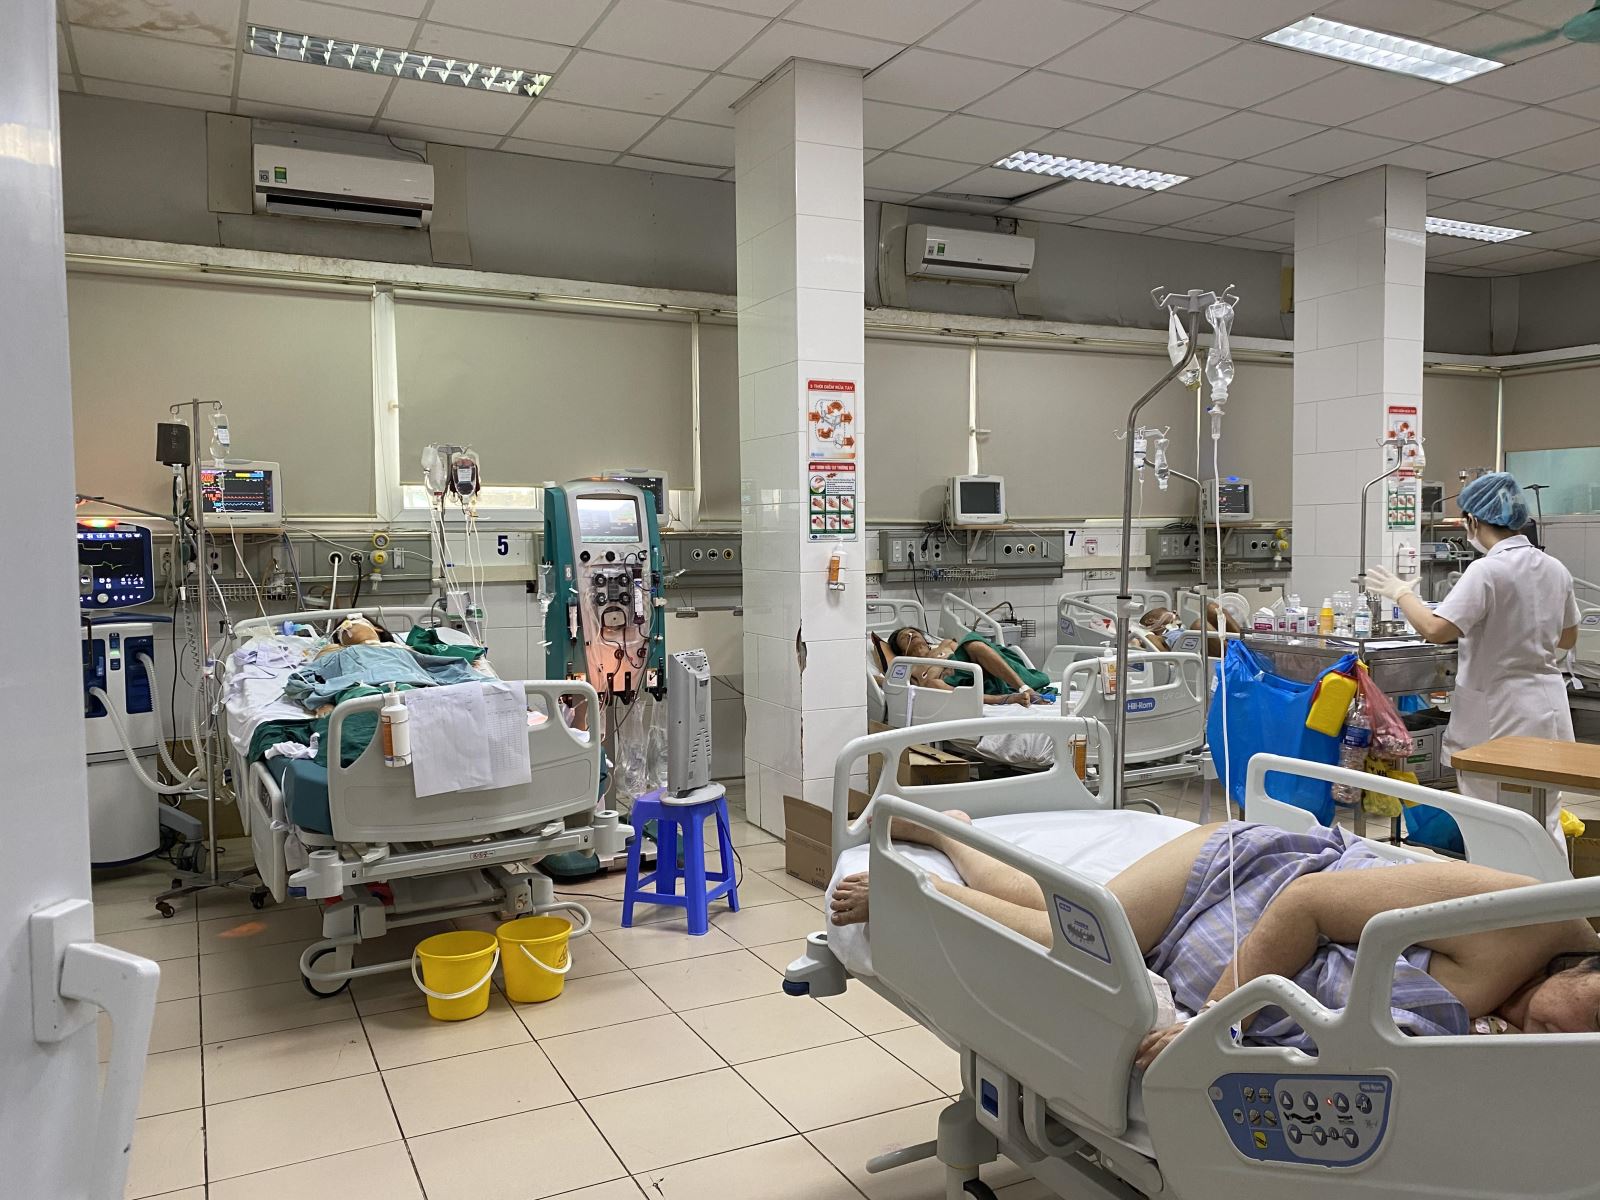 khu vực cấp cứu, điều trị bệnh nhân, tại bệnh viện nhiệt đới Trung ương.